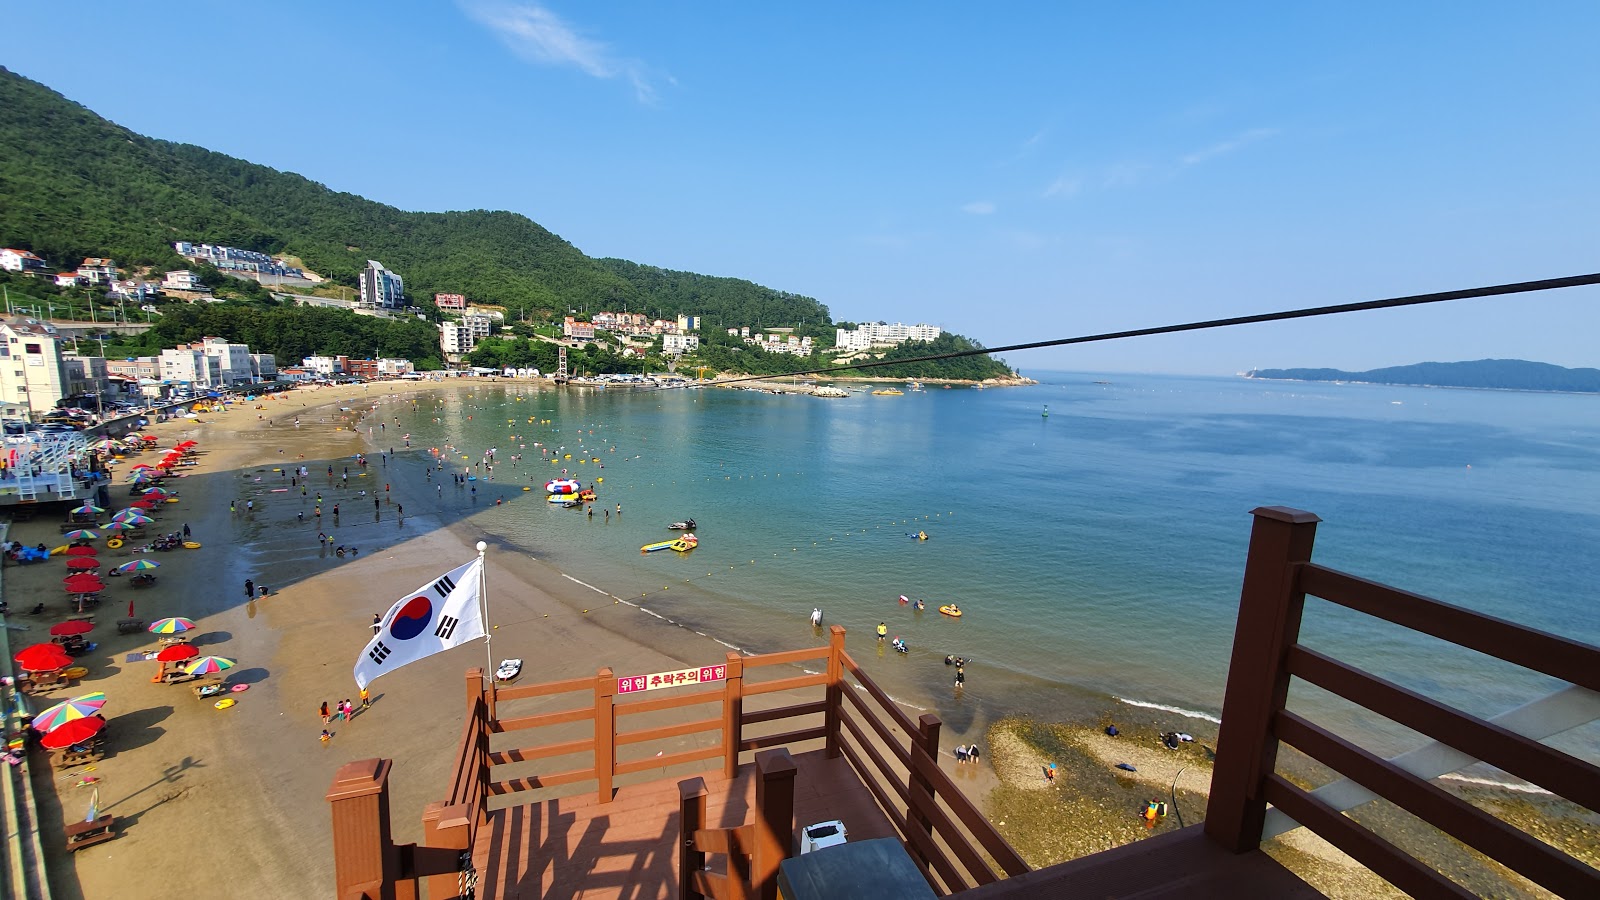 Foto de Deokpo Beach - lugar popular entre los conocedores del relax